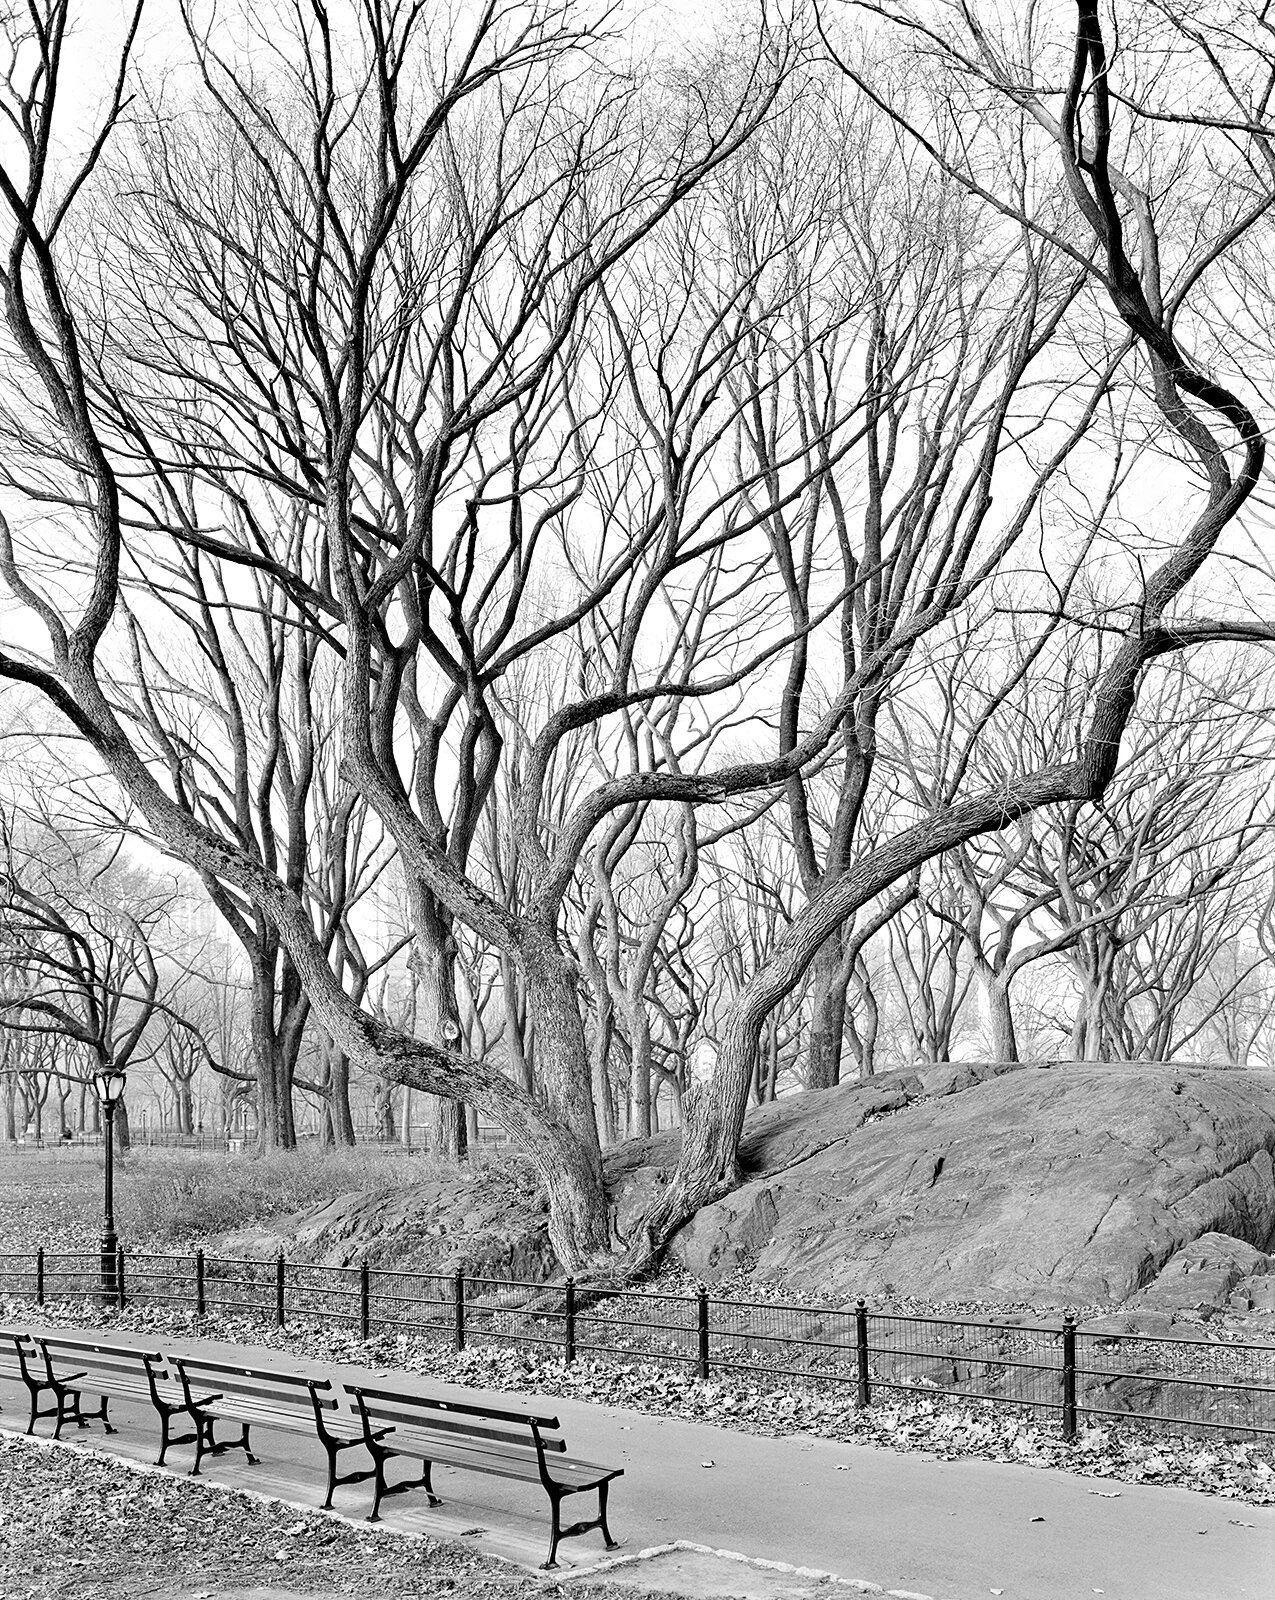  American Elm, Central Park, New York 2012 